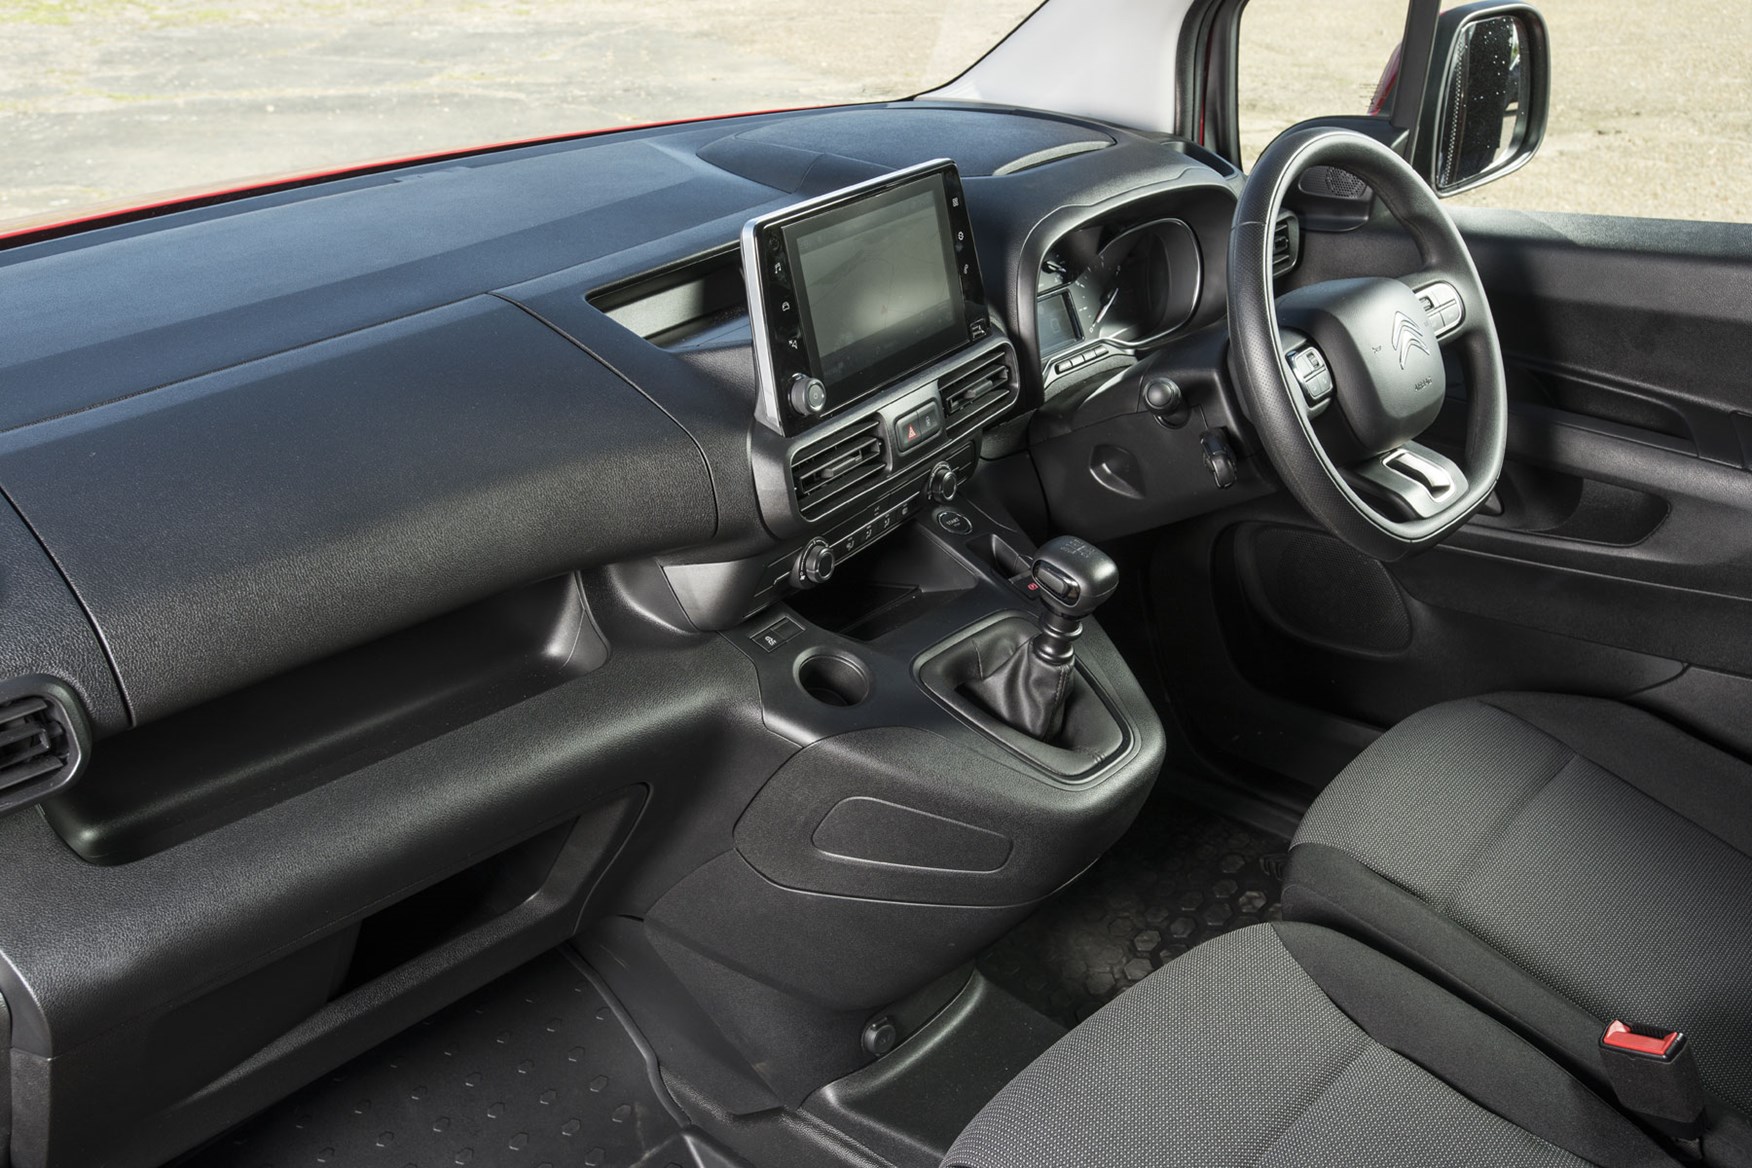 Citroen Berlingo van review - 2019 model, cab interior